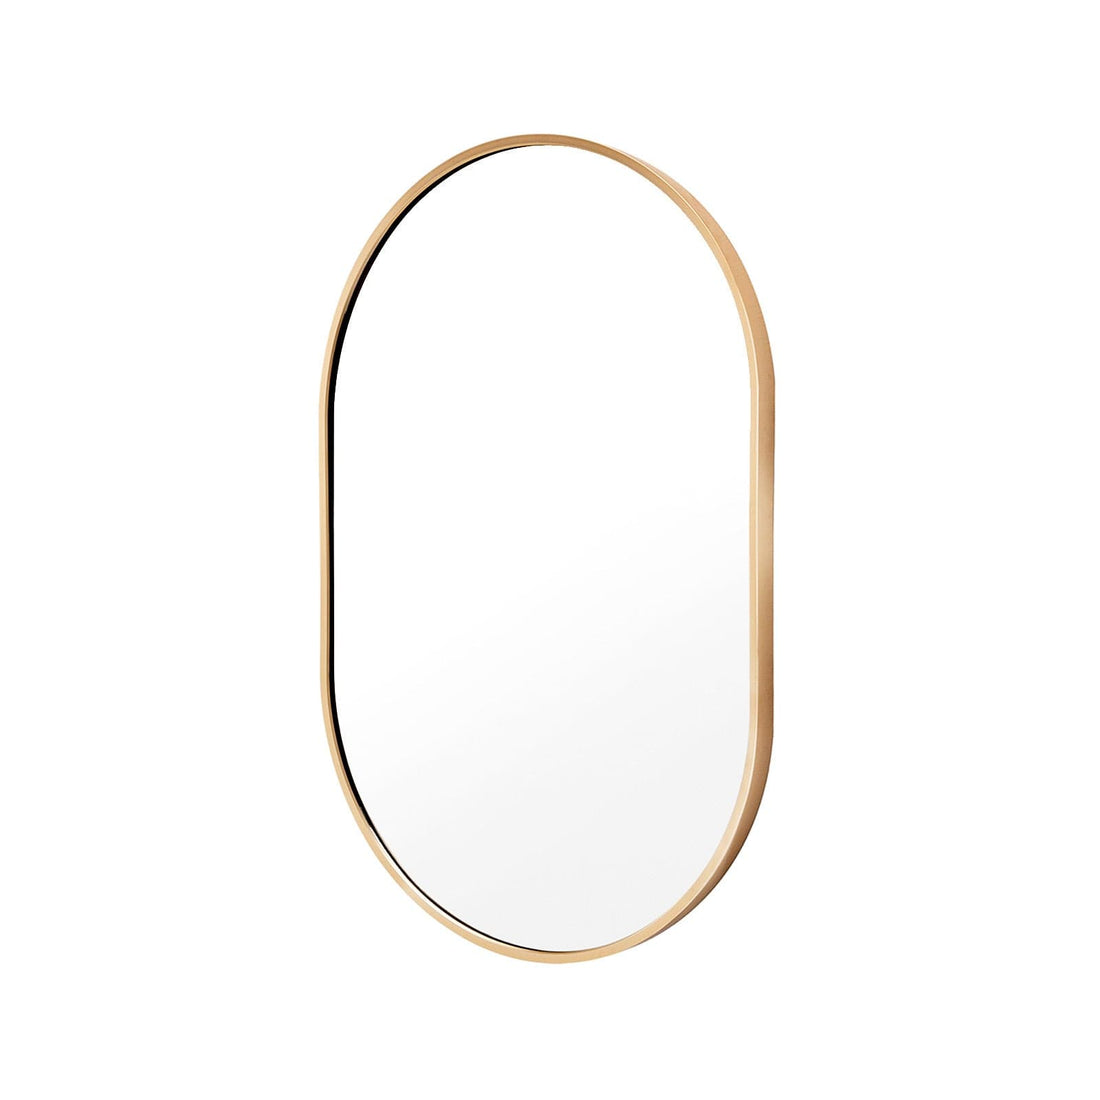 La Bella Gold Wall Mirror Oval Aluminum Frame Makeup Decor Bathroom Vanity 50 x 75cm-Health &amp; Beauty &gt; Makeup Mirrors-PEROZ Accessories